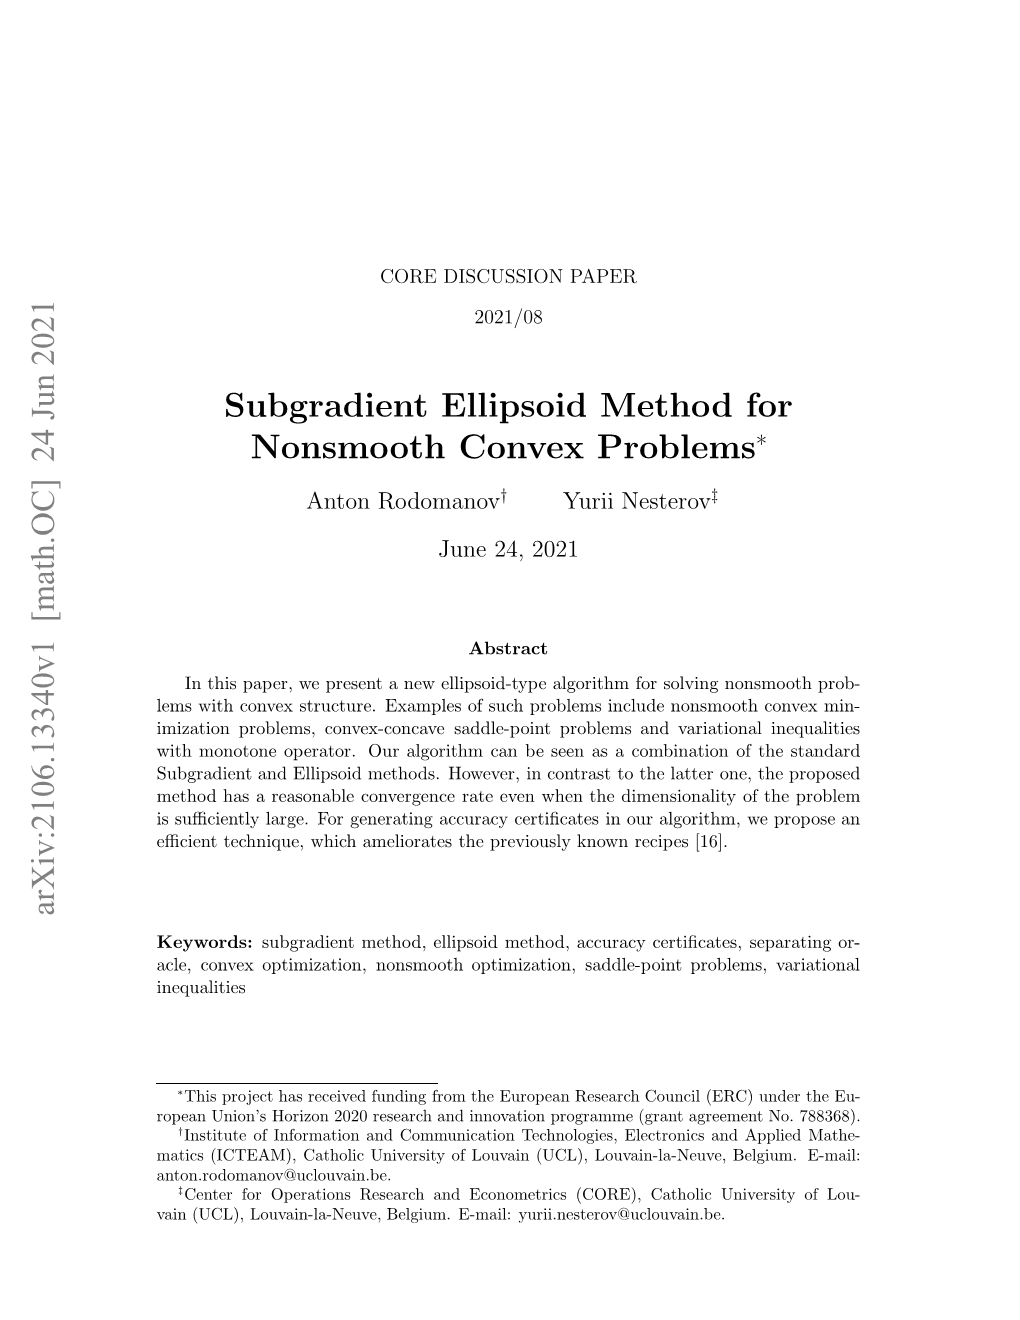 Subgradient Ellipsoid Method for Nonsmooth Convex Problems